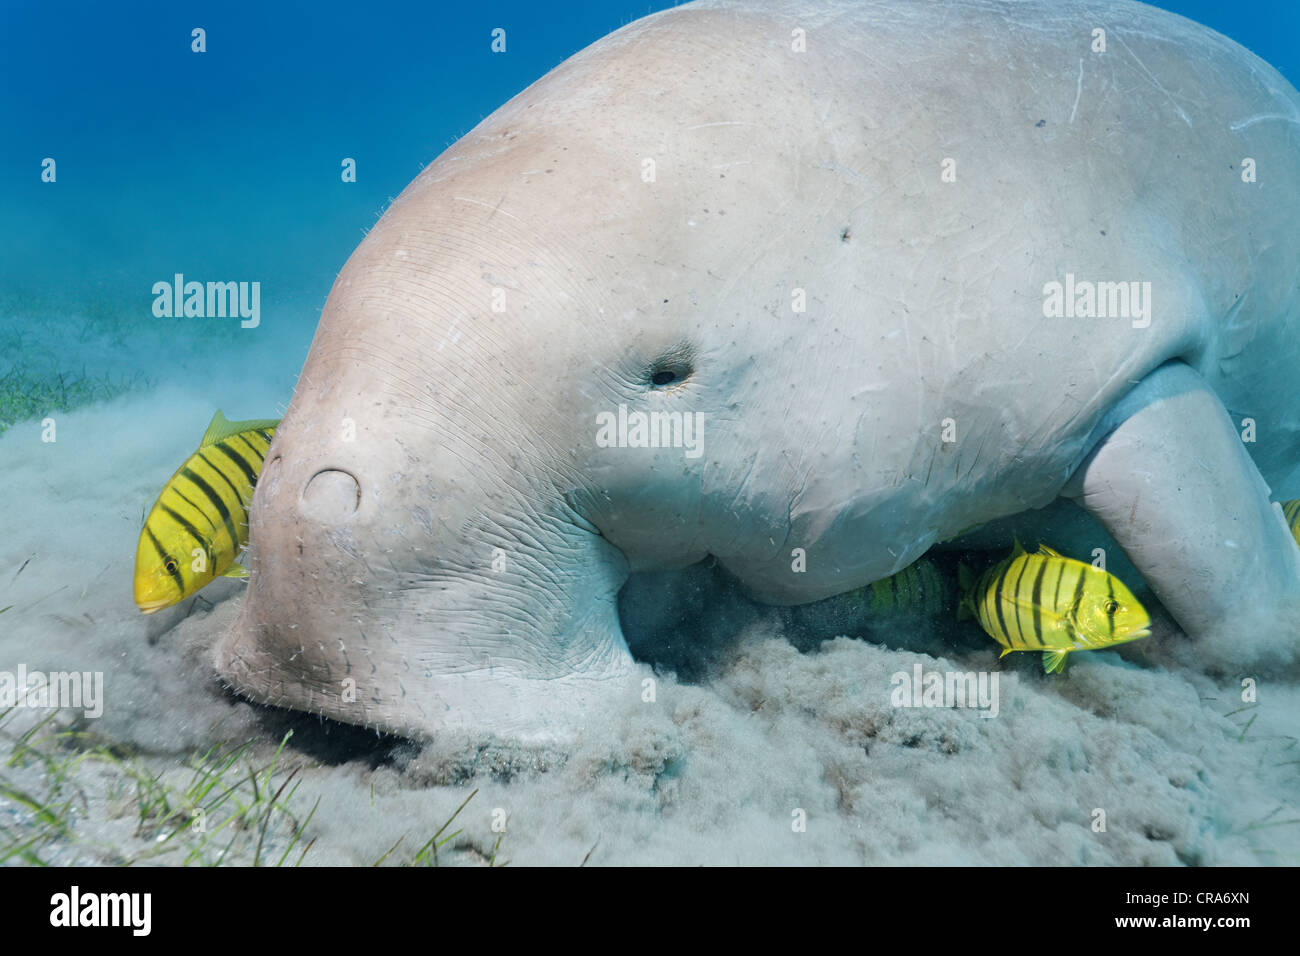 Le Dugong (Dugong dugon) se nourrissant sur les herbiers, lit avec Golden (Gnathanodon speciosus) Trevallys, Grande Barrière de Corail Banque D'Images